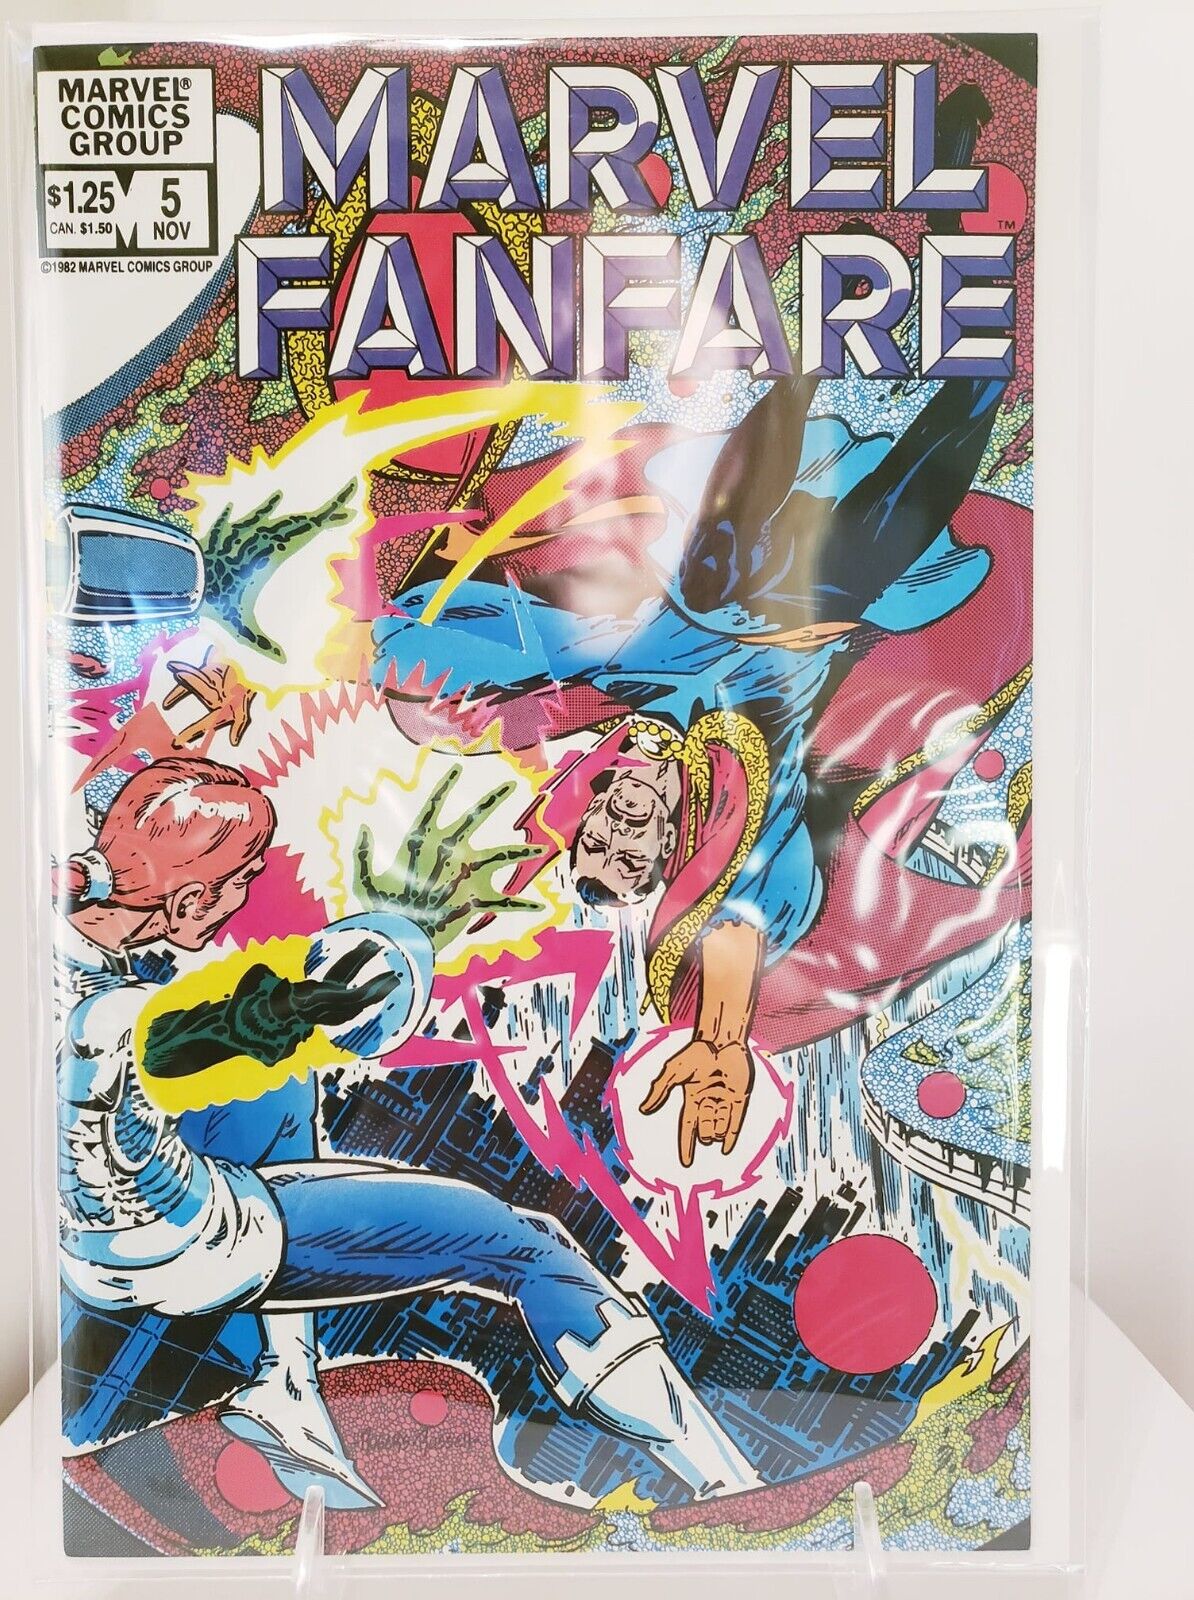 25811: Marvel Comics MARVEL FANFARE #5 VF Grade